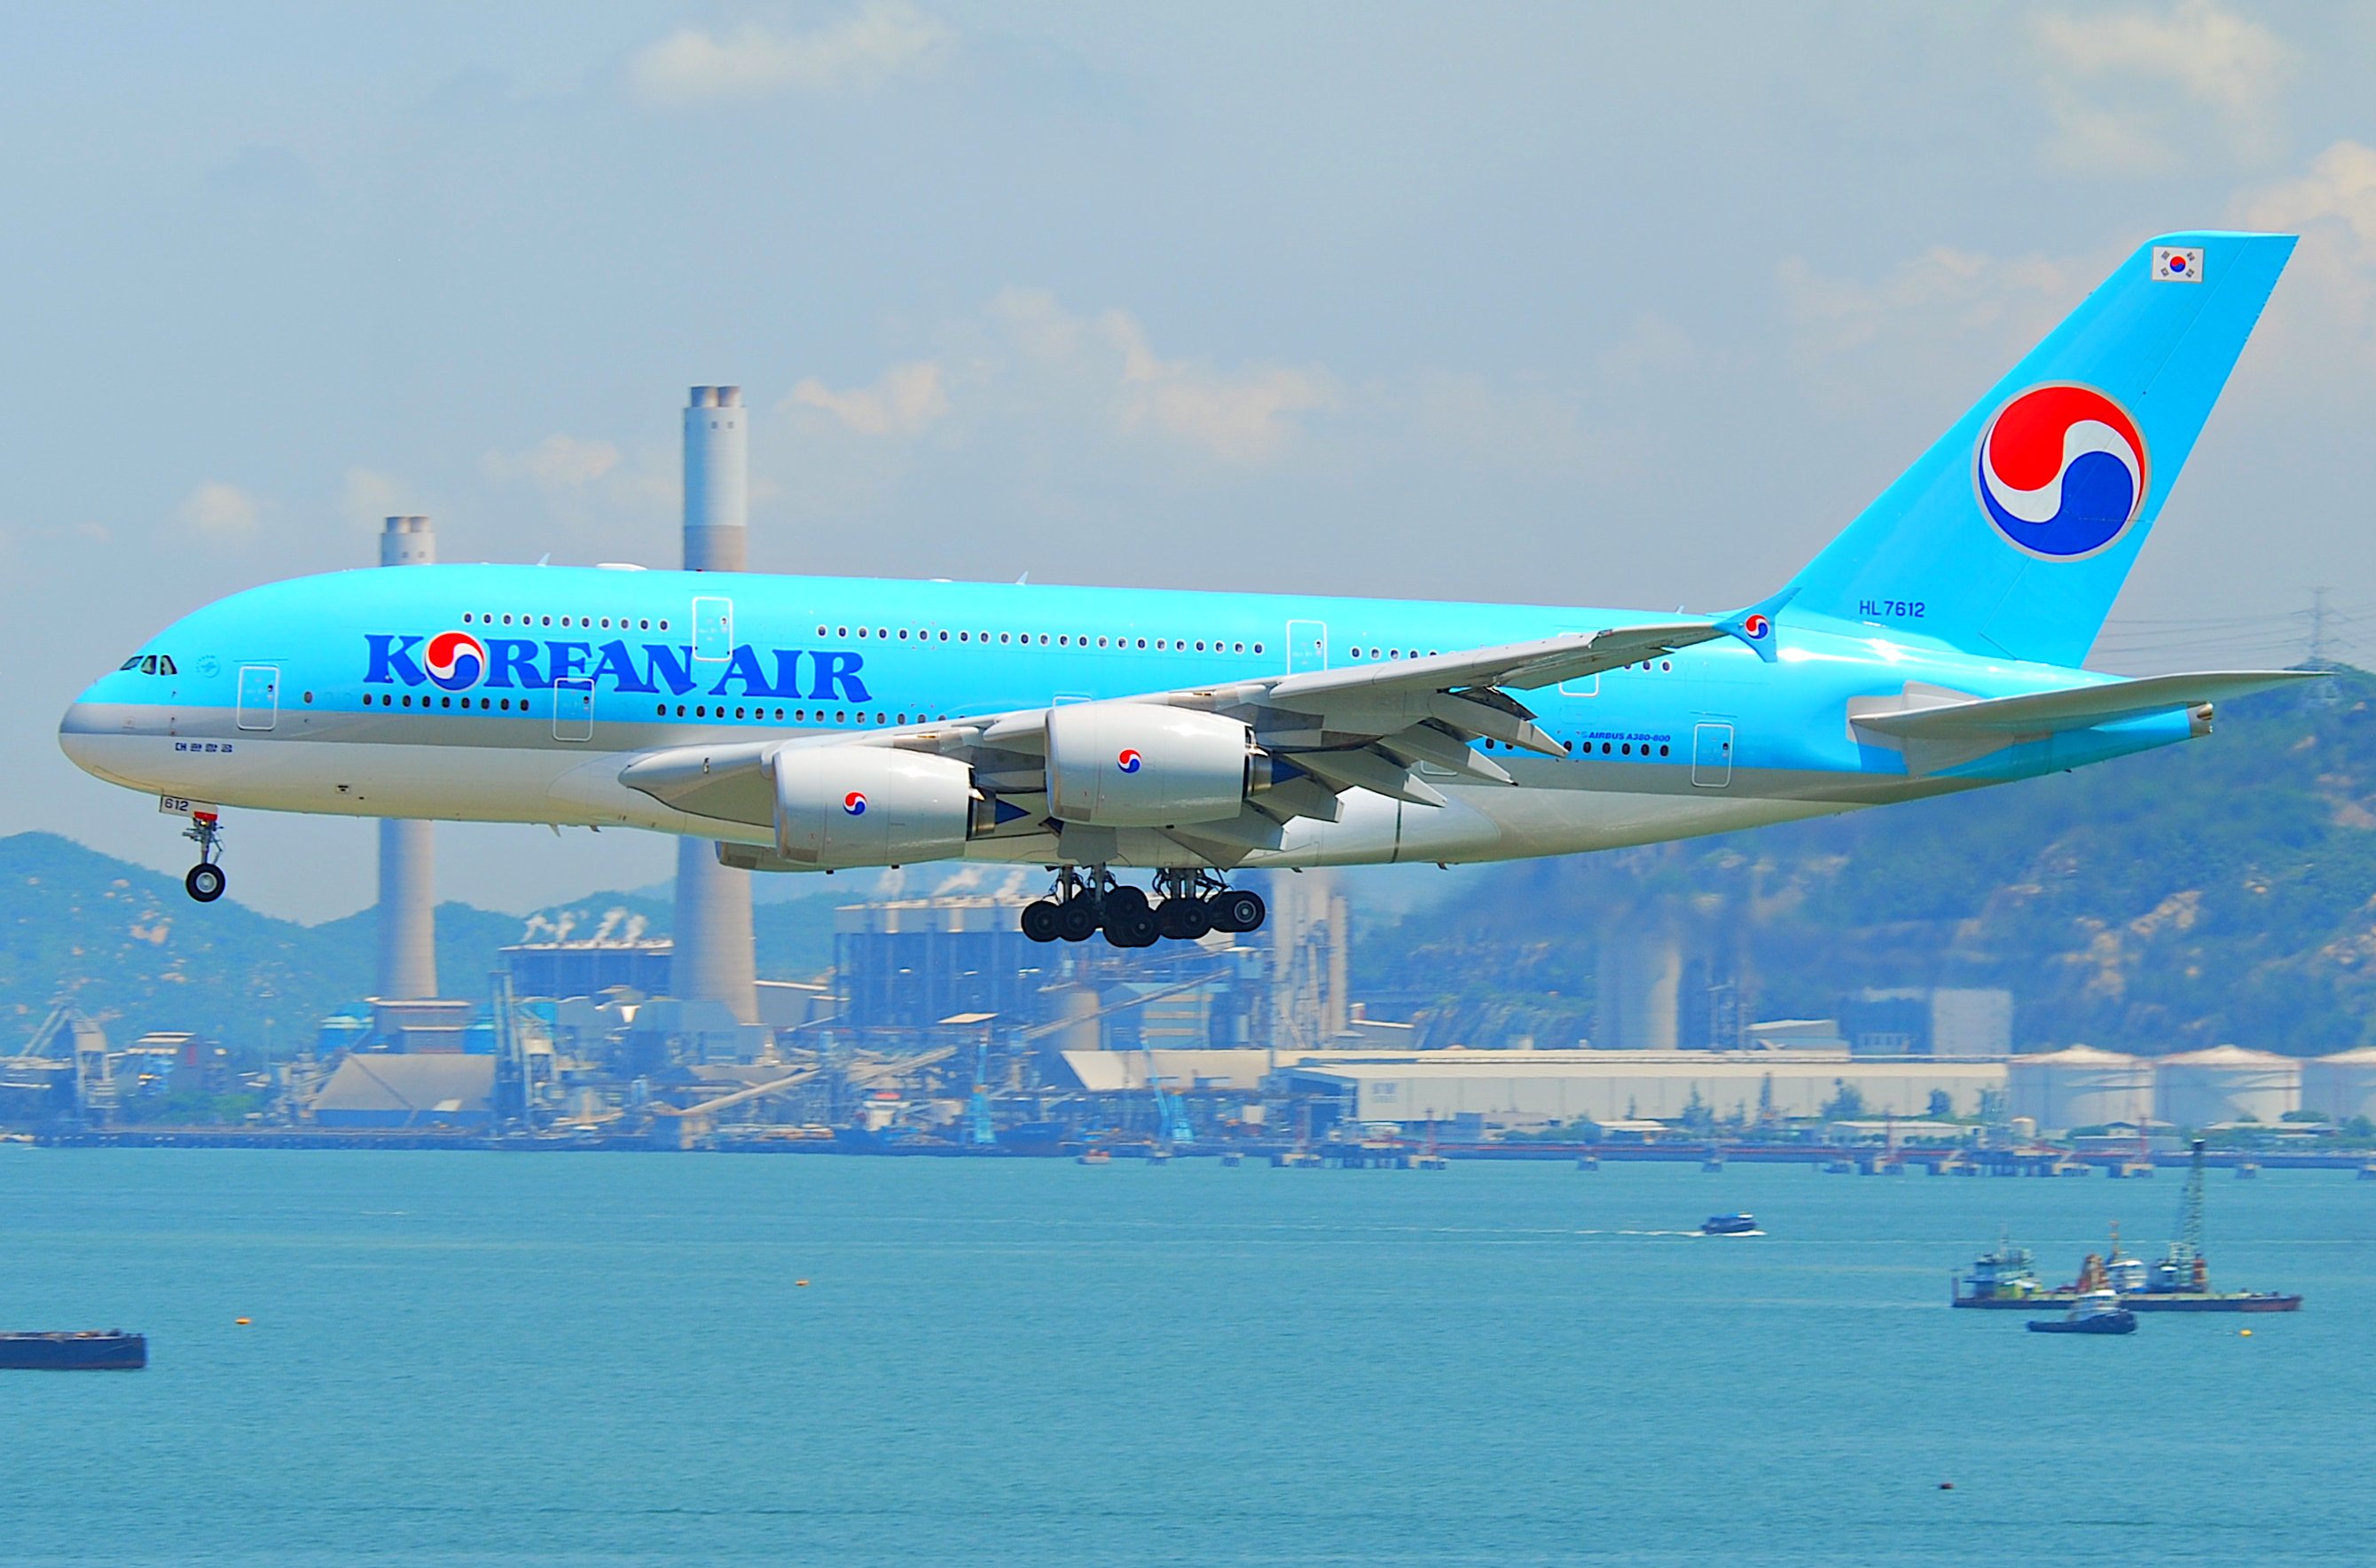 Korean Air: trafic en hausse et bénéfices en baisse